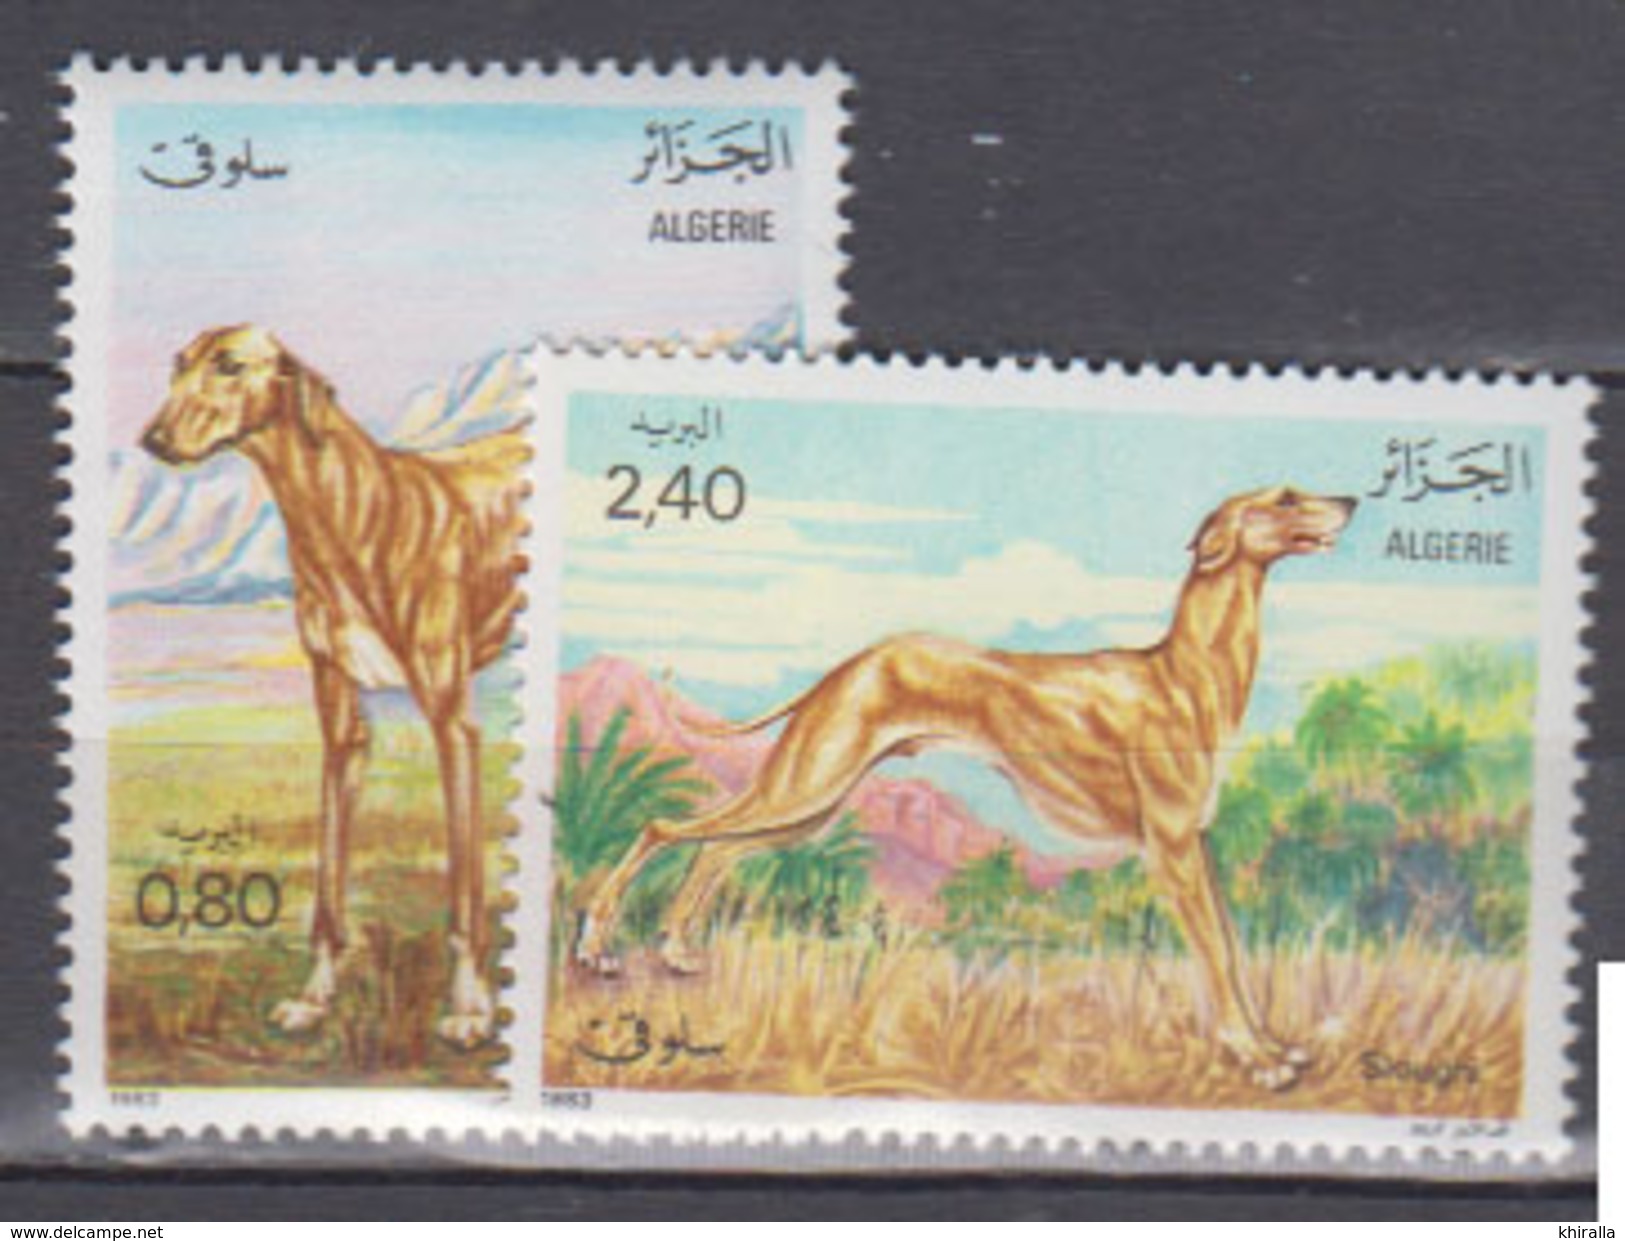 ALGERIE     1983     Faune      N . 798 / 799       COTE     3 , 25   EUROS       ( S 18 ) - Argelia (1962-...)